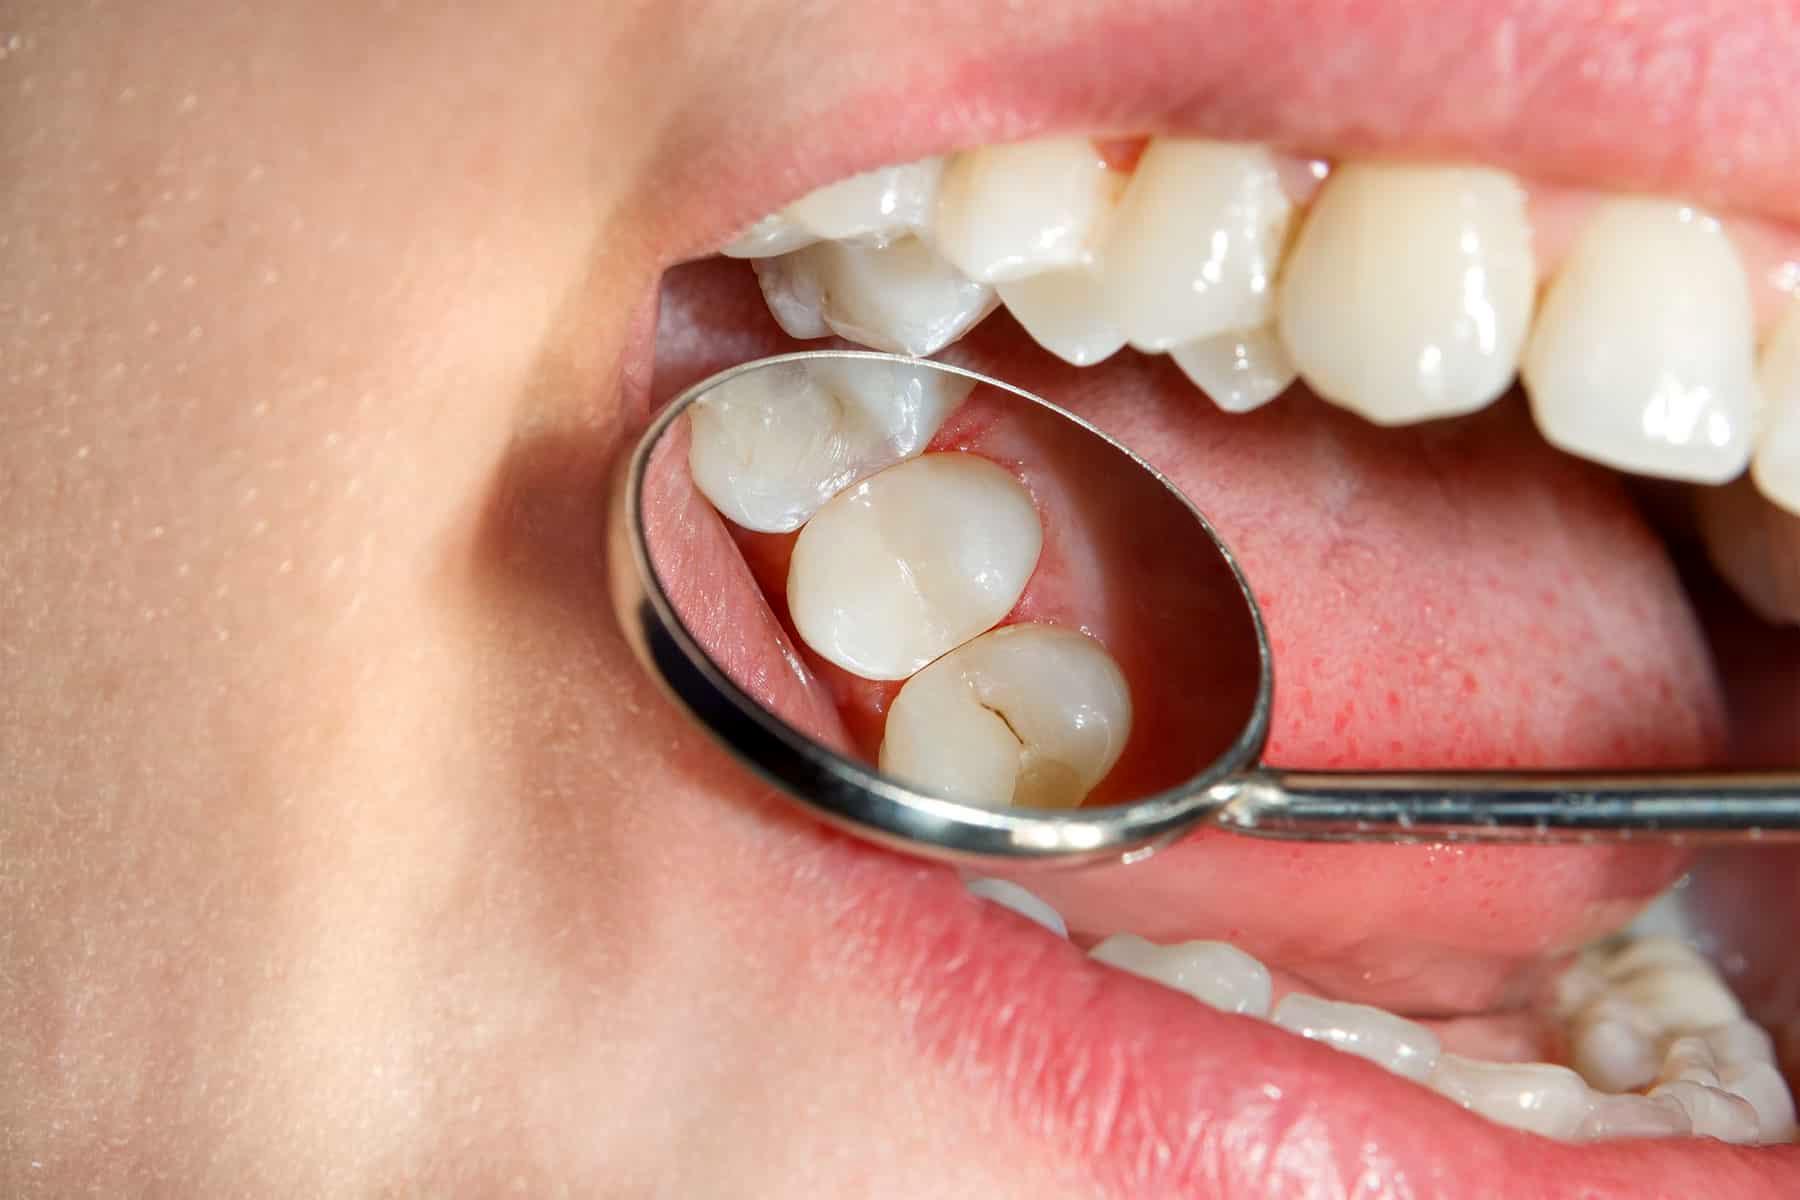 عامل خراب شدن دندان را بشناسید